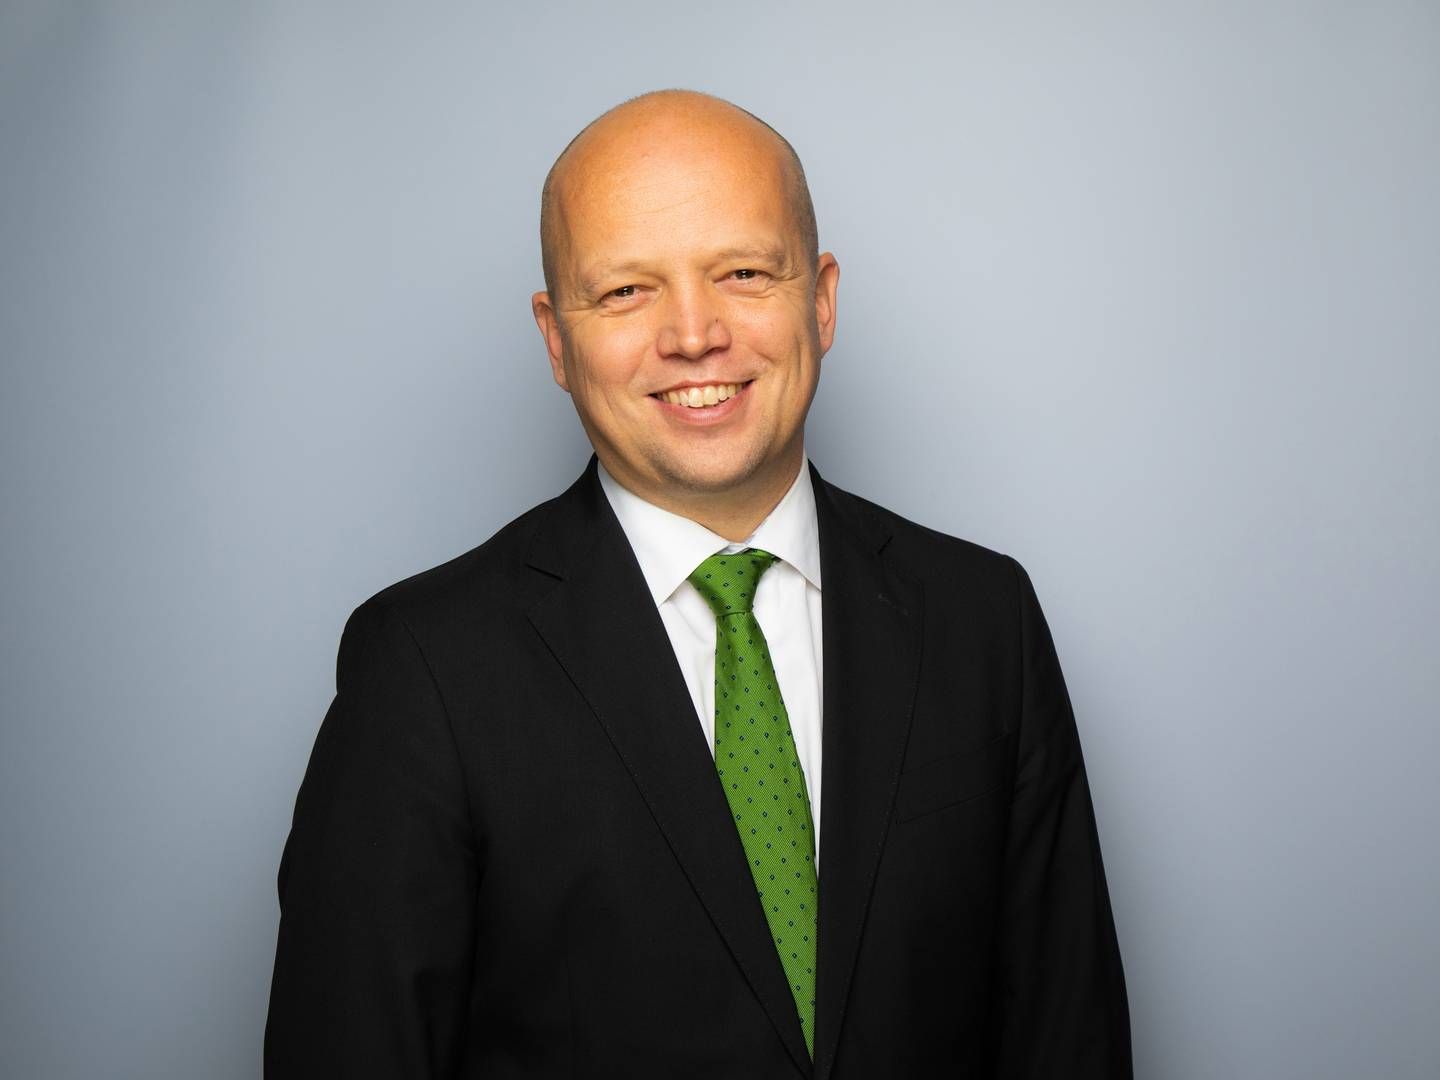 The Norwegian Minister of Finance Trygve Slagsvold Vedum. | Photo: NTB Kommunikasjon/Office of the Prime Minister